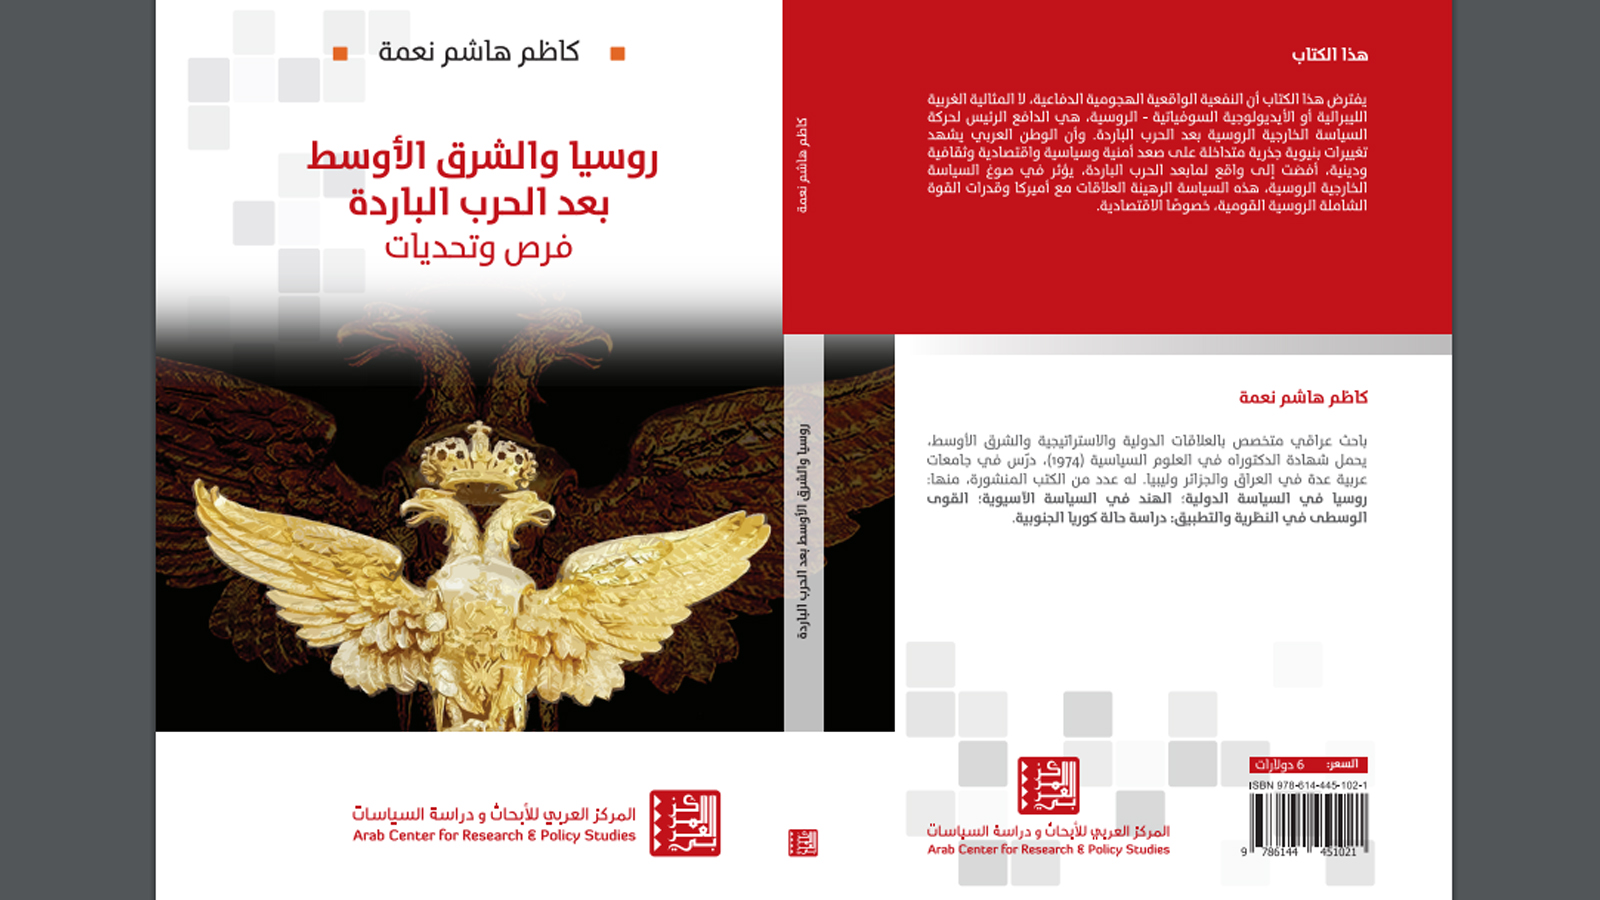 روسيا والشرق الأوسط:كتاب في التوصيات العربية